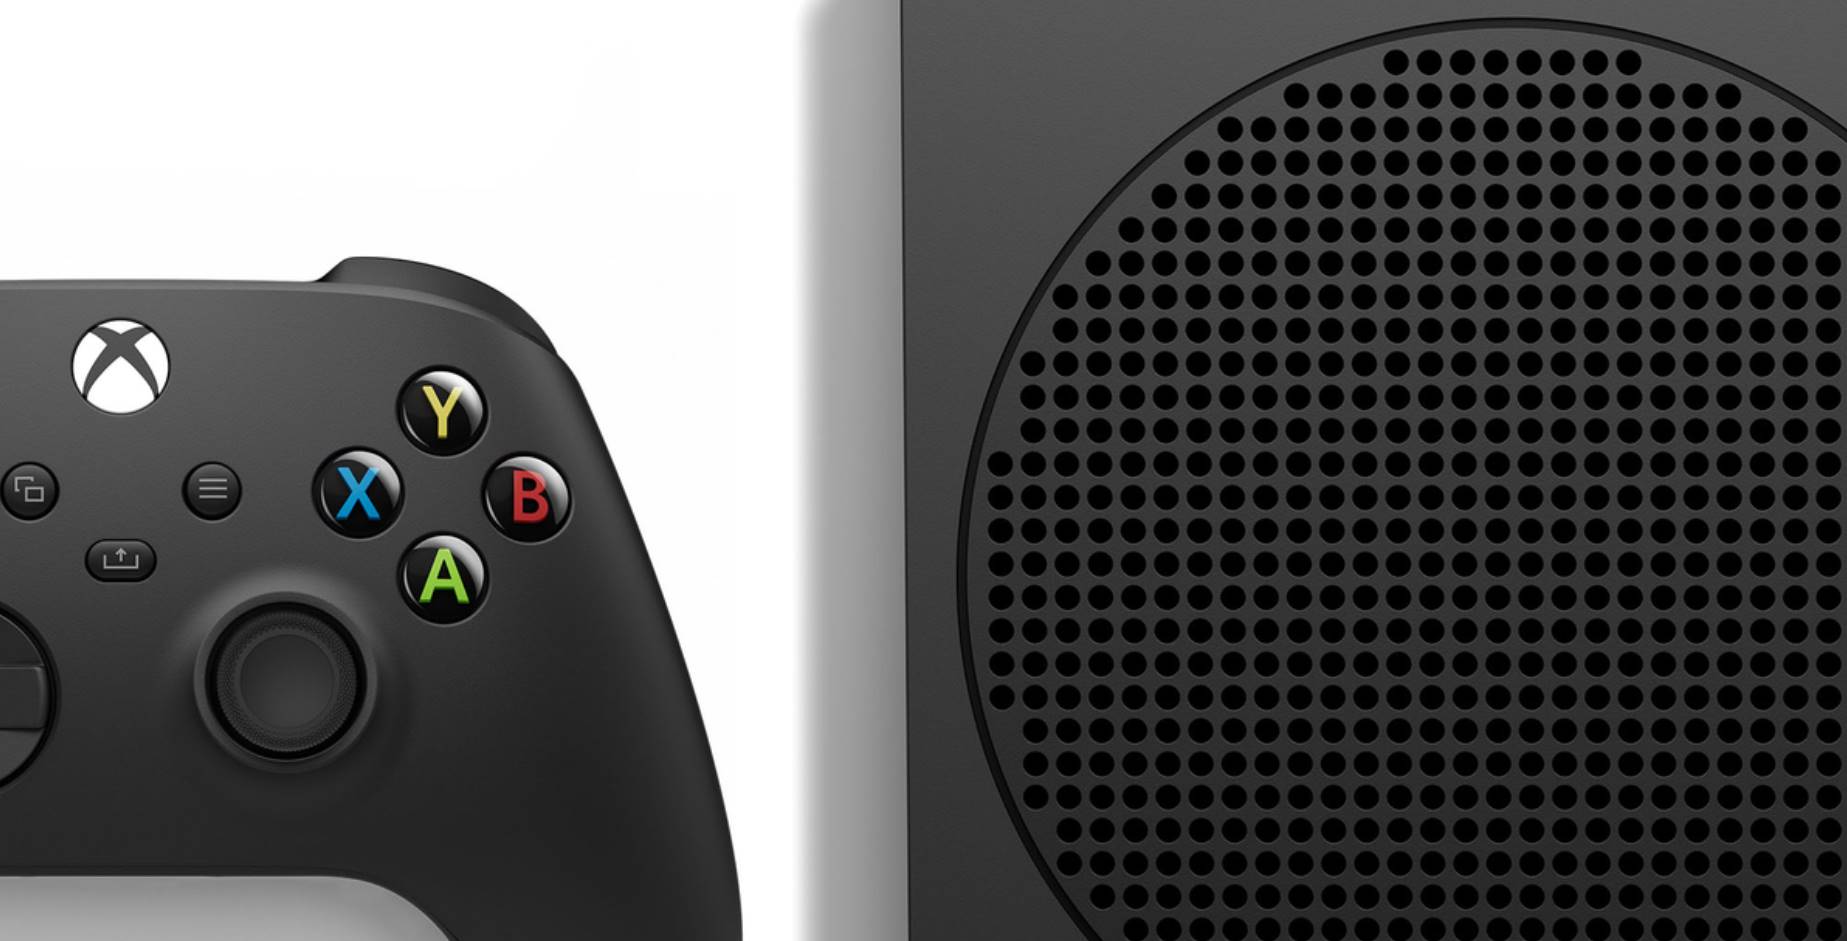 Annunciata l’Xbox Series S - 1TB in Carbon Black